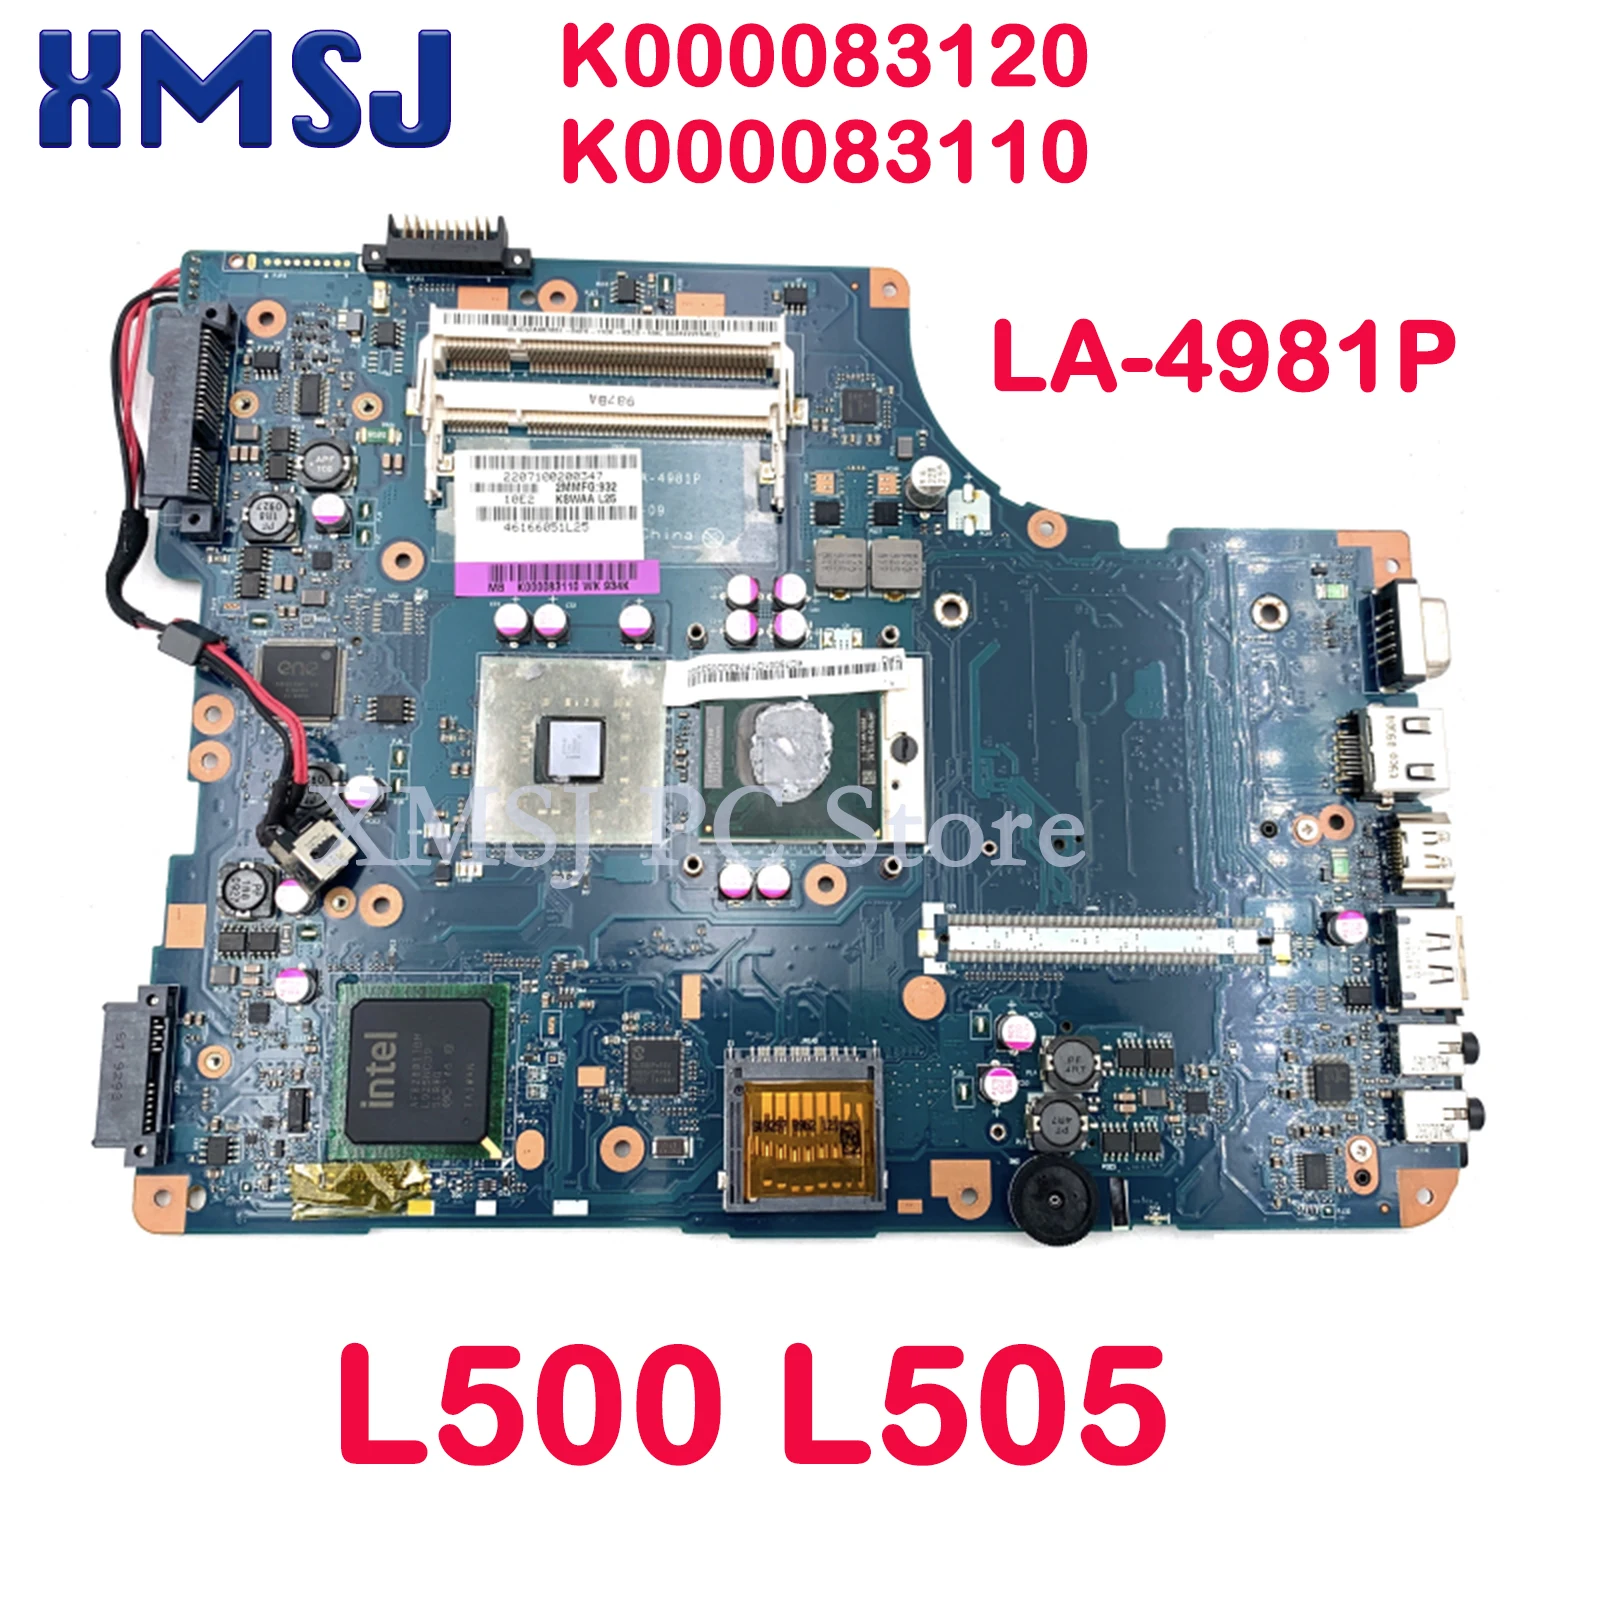 

XMSJ KSWAA LA-4981P K000083120 K000083110 For Toshiba Satellite L500 L505 Laptop Motherboard DDR2 Free CPU Main Board